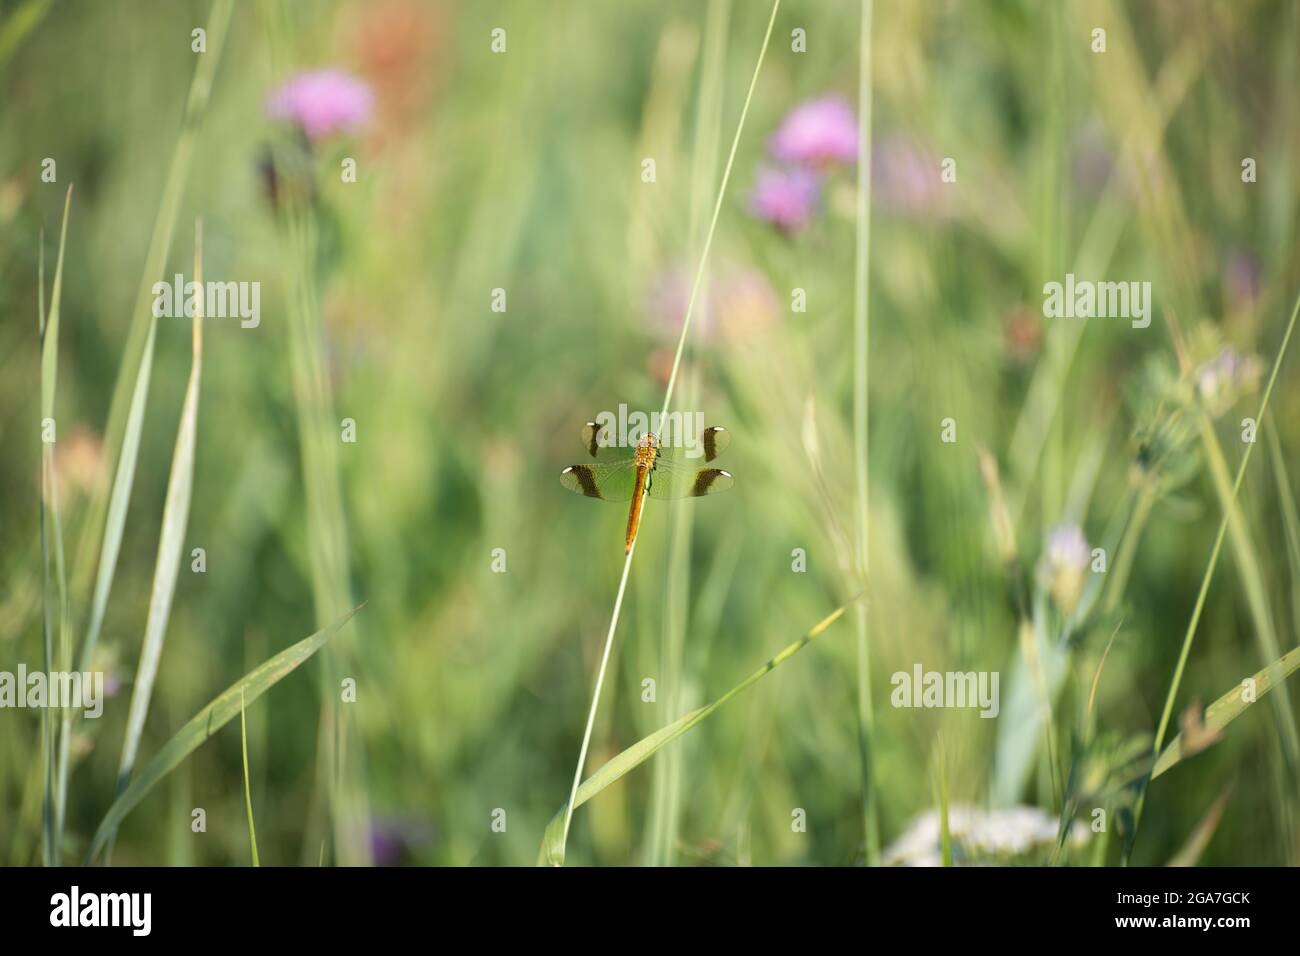 Una mosca di drago è seduta su una lama di un'erba, regione di Kaluga, Russia Foto Stock